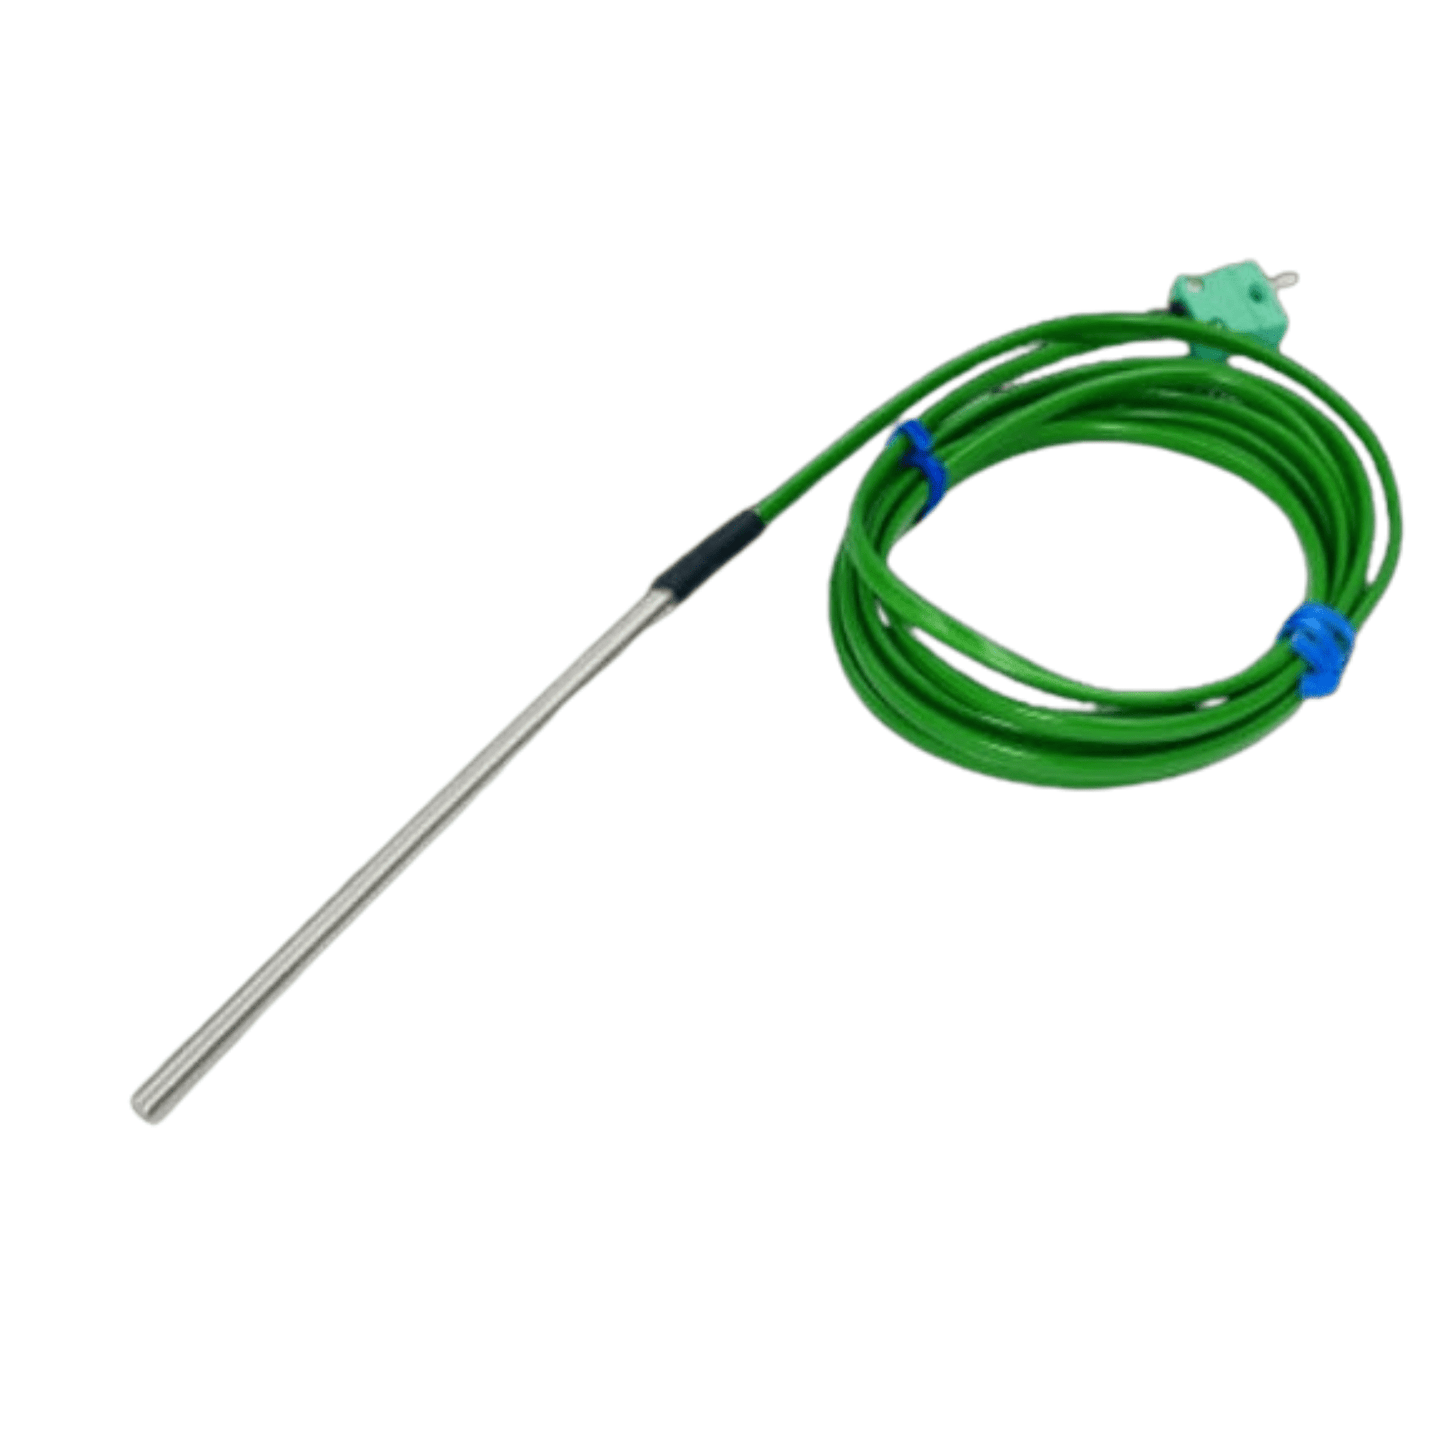 Una sonda di temperatura verde per uso generale con un diametro di 4,8 mm per applicazioni industriali di Thermométrie.fr su sfondo bianco.